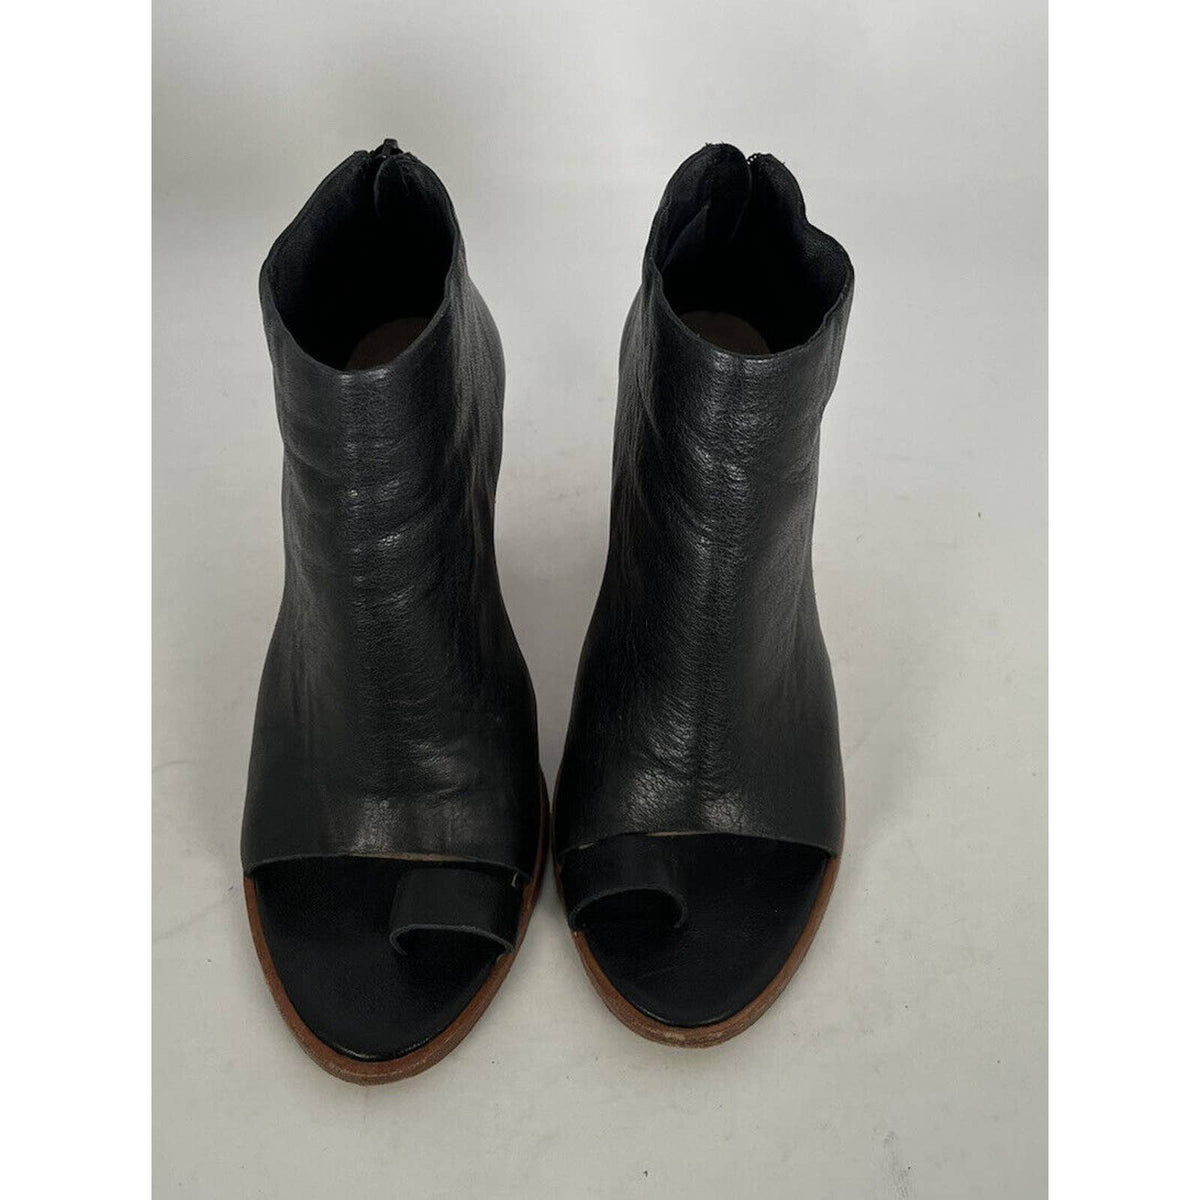 Loeffler Randall Peep Toe Black Leather Booties Sz.6.5